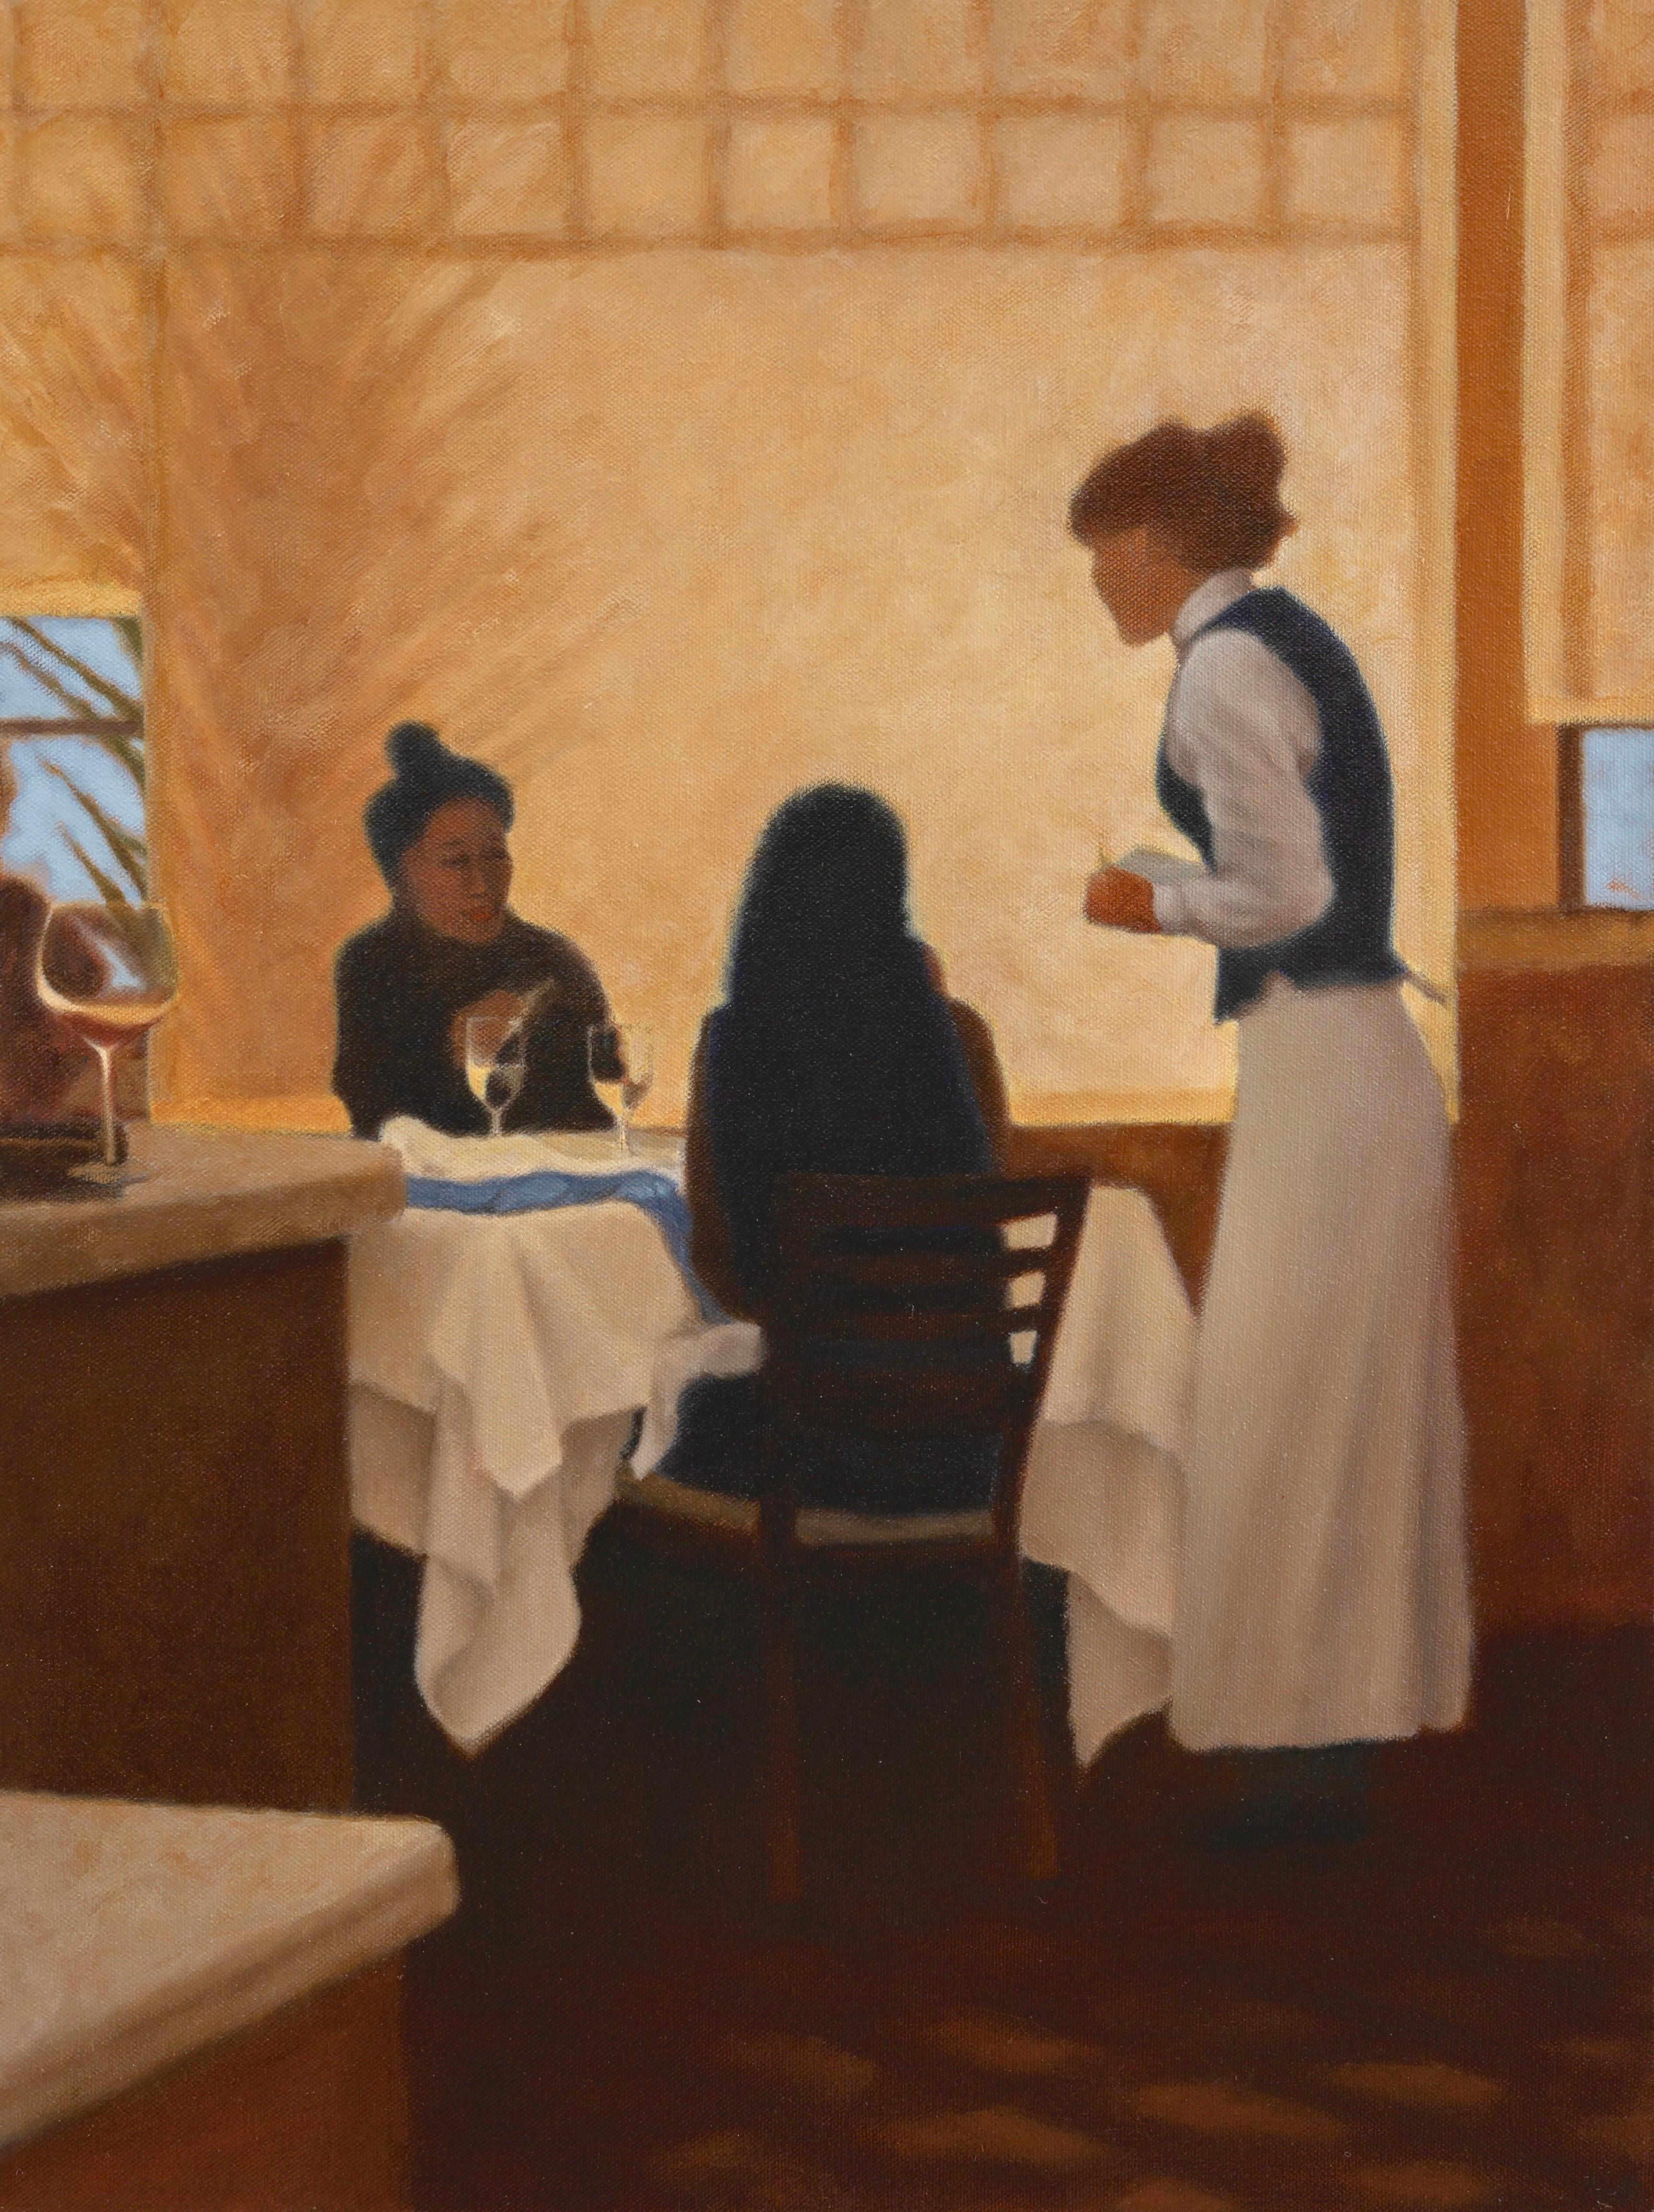 Mimi Jensen Still-Life Painting - On The Town: Napa / restaurant kitchen scene oil on canvas - food + dining